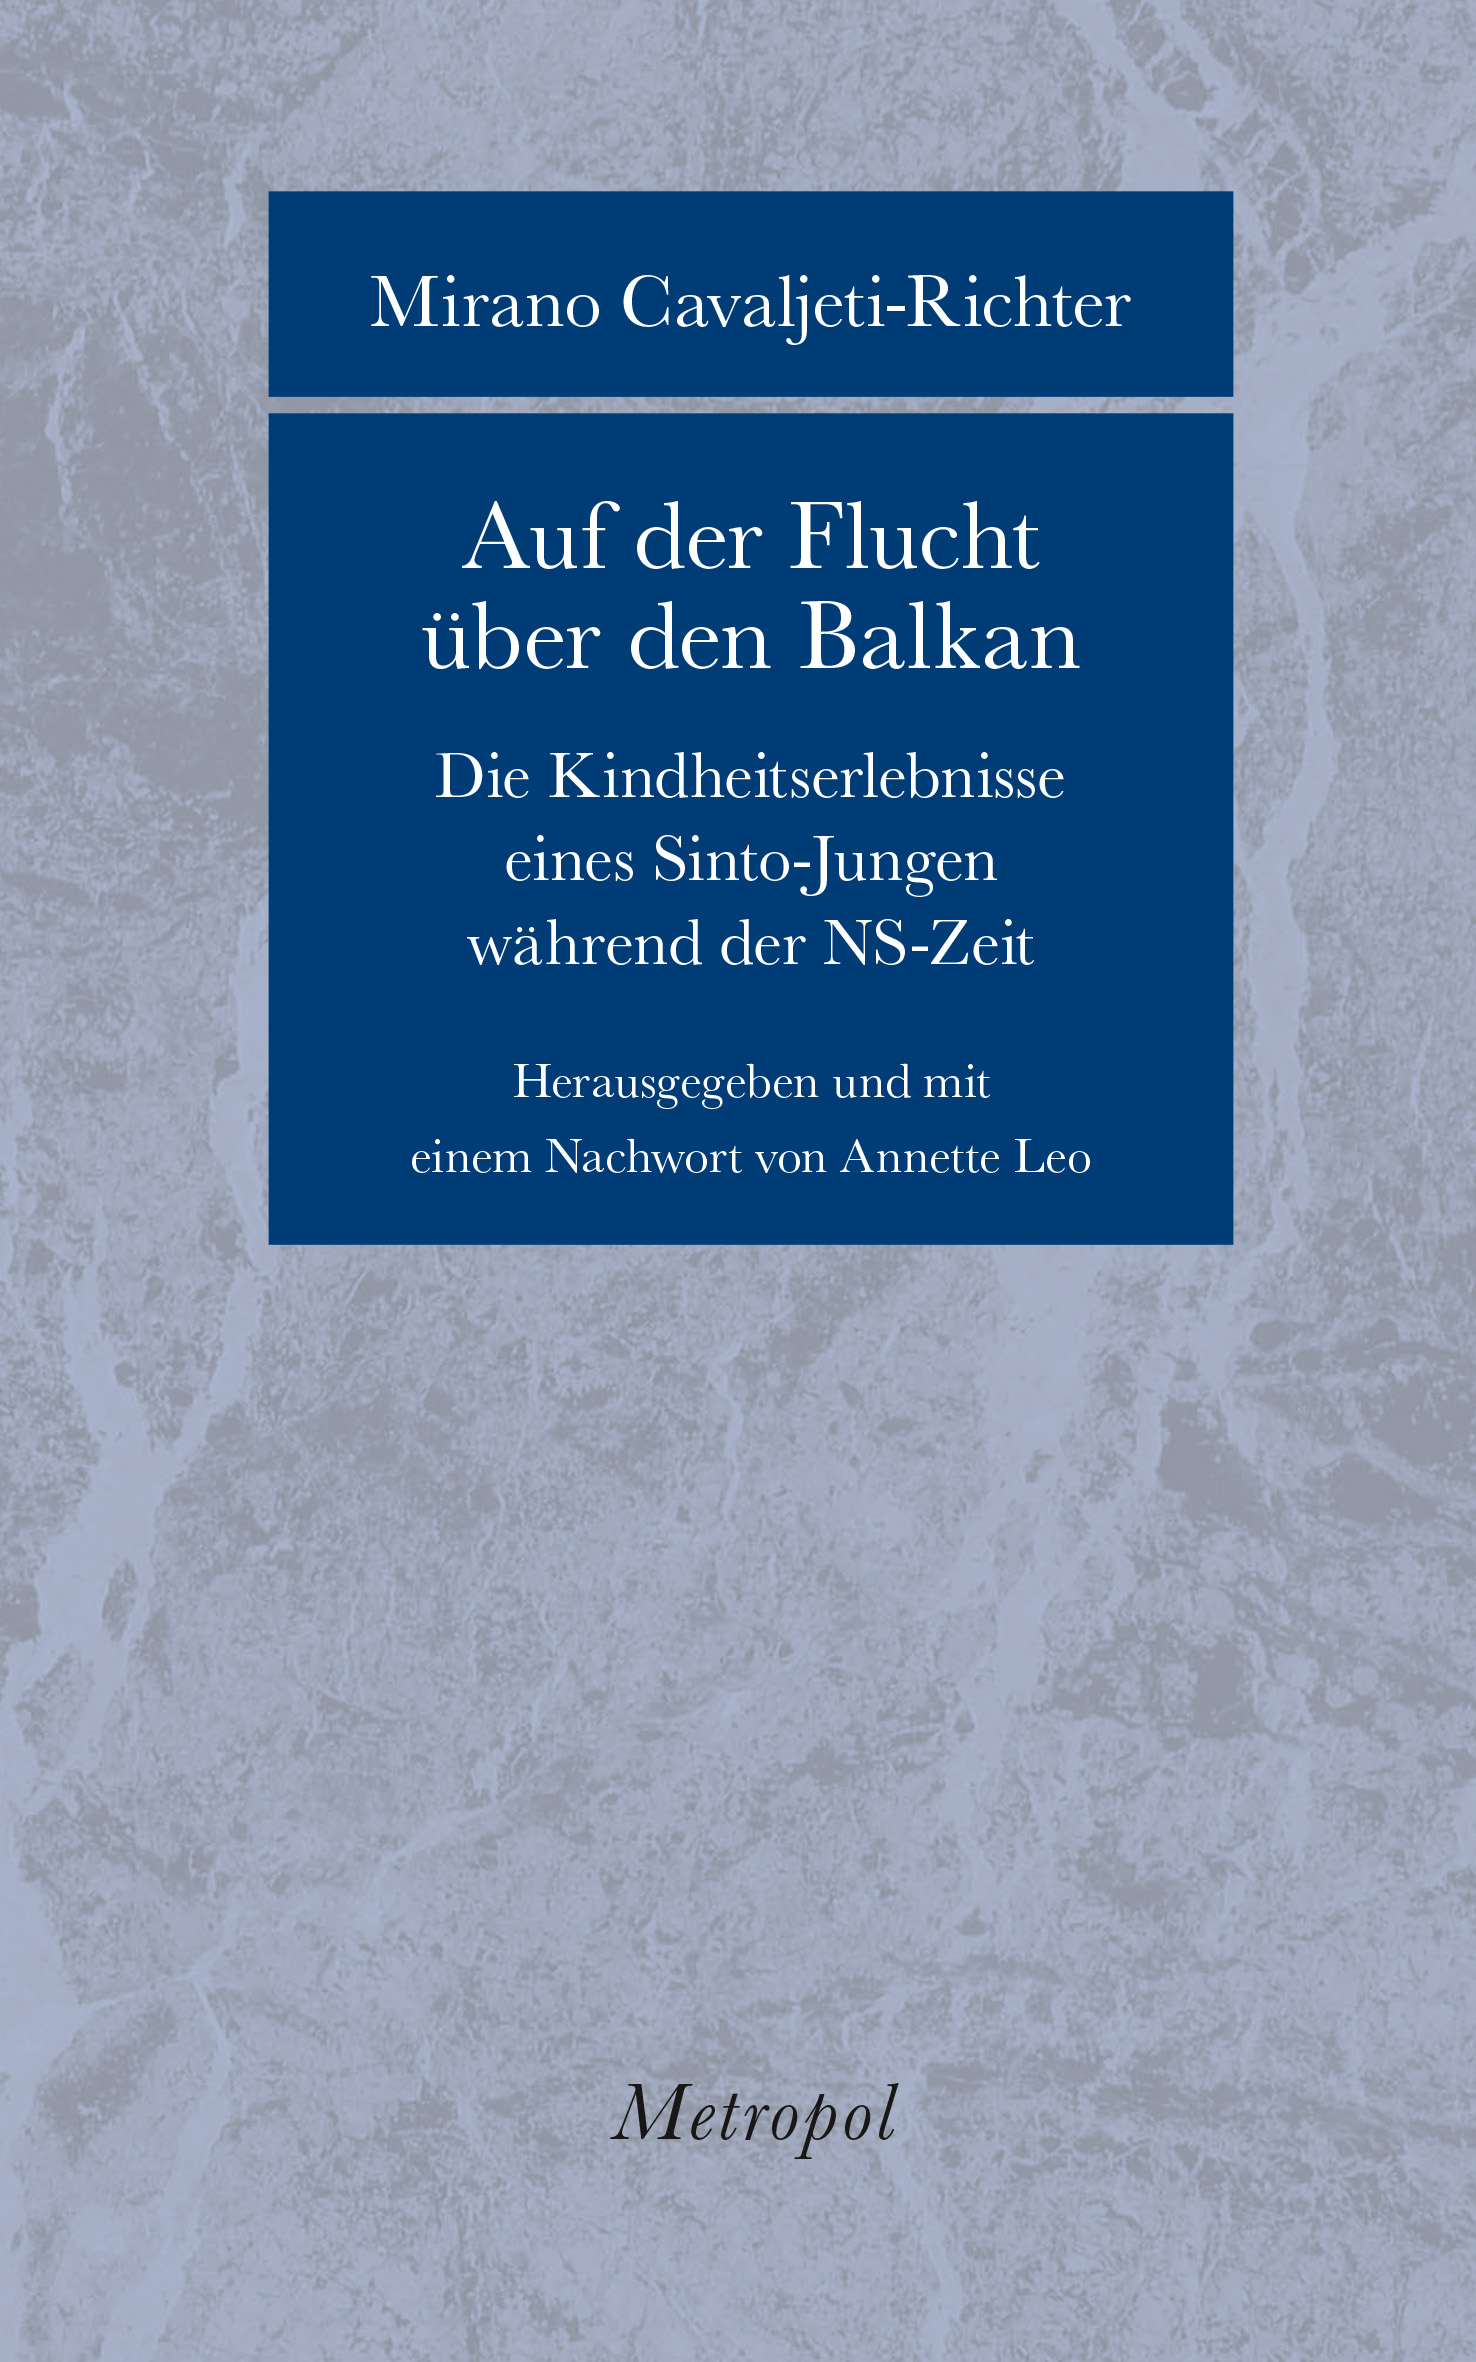 Book cover of Mirano Cavaljeti-Richter: Auf der Flucht über den Balkan. Die Kindheitserlebnisse eines Sinto-Jungen während der NS-Zeit.